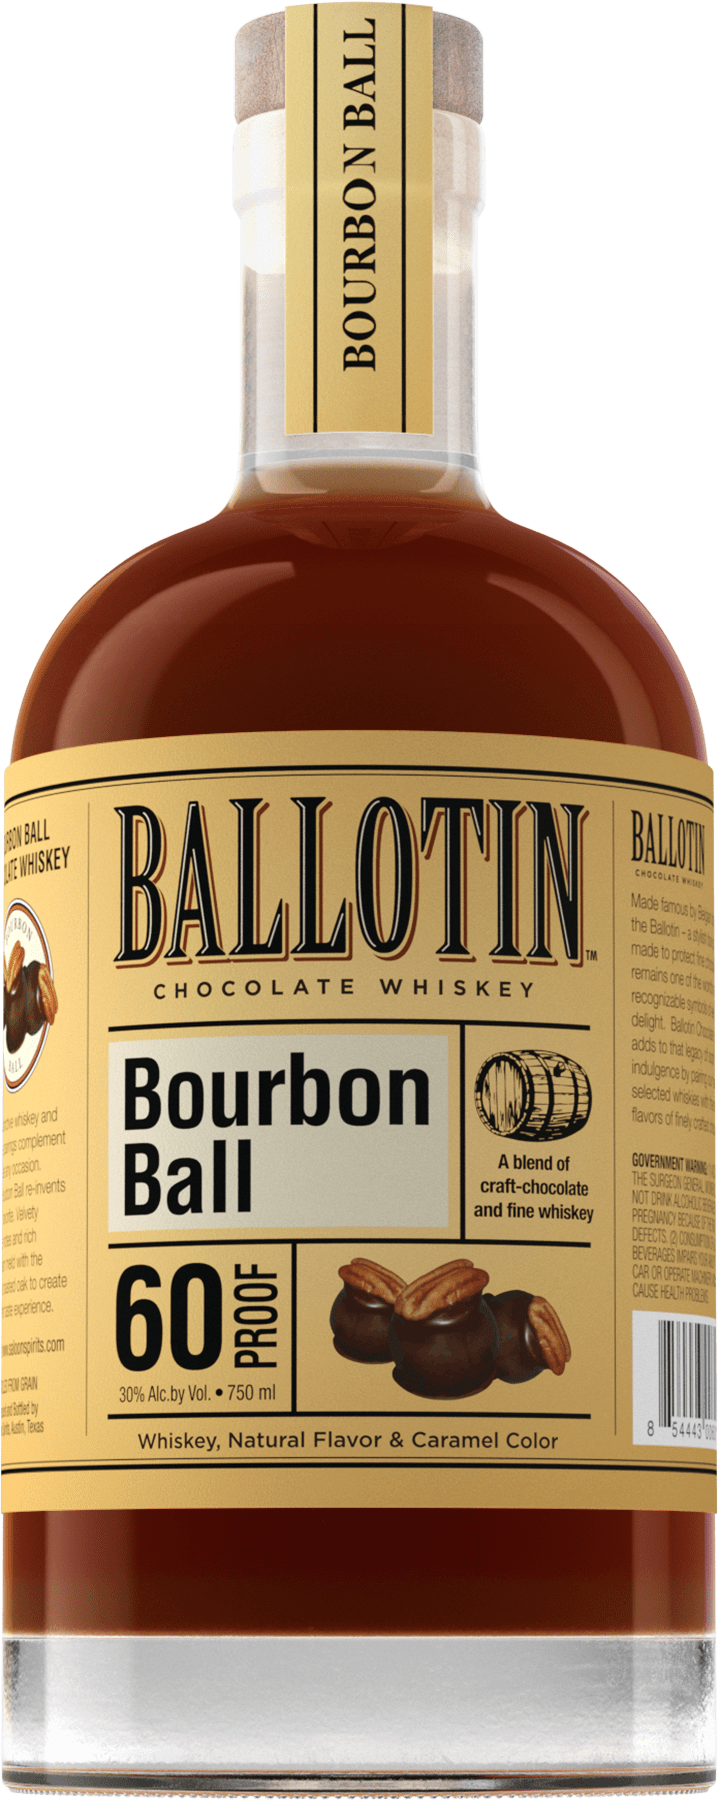 Ballotin Bourbon Ball Whiskey - Barbank